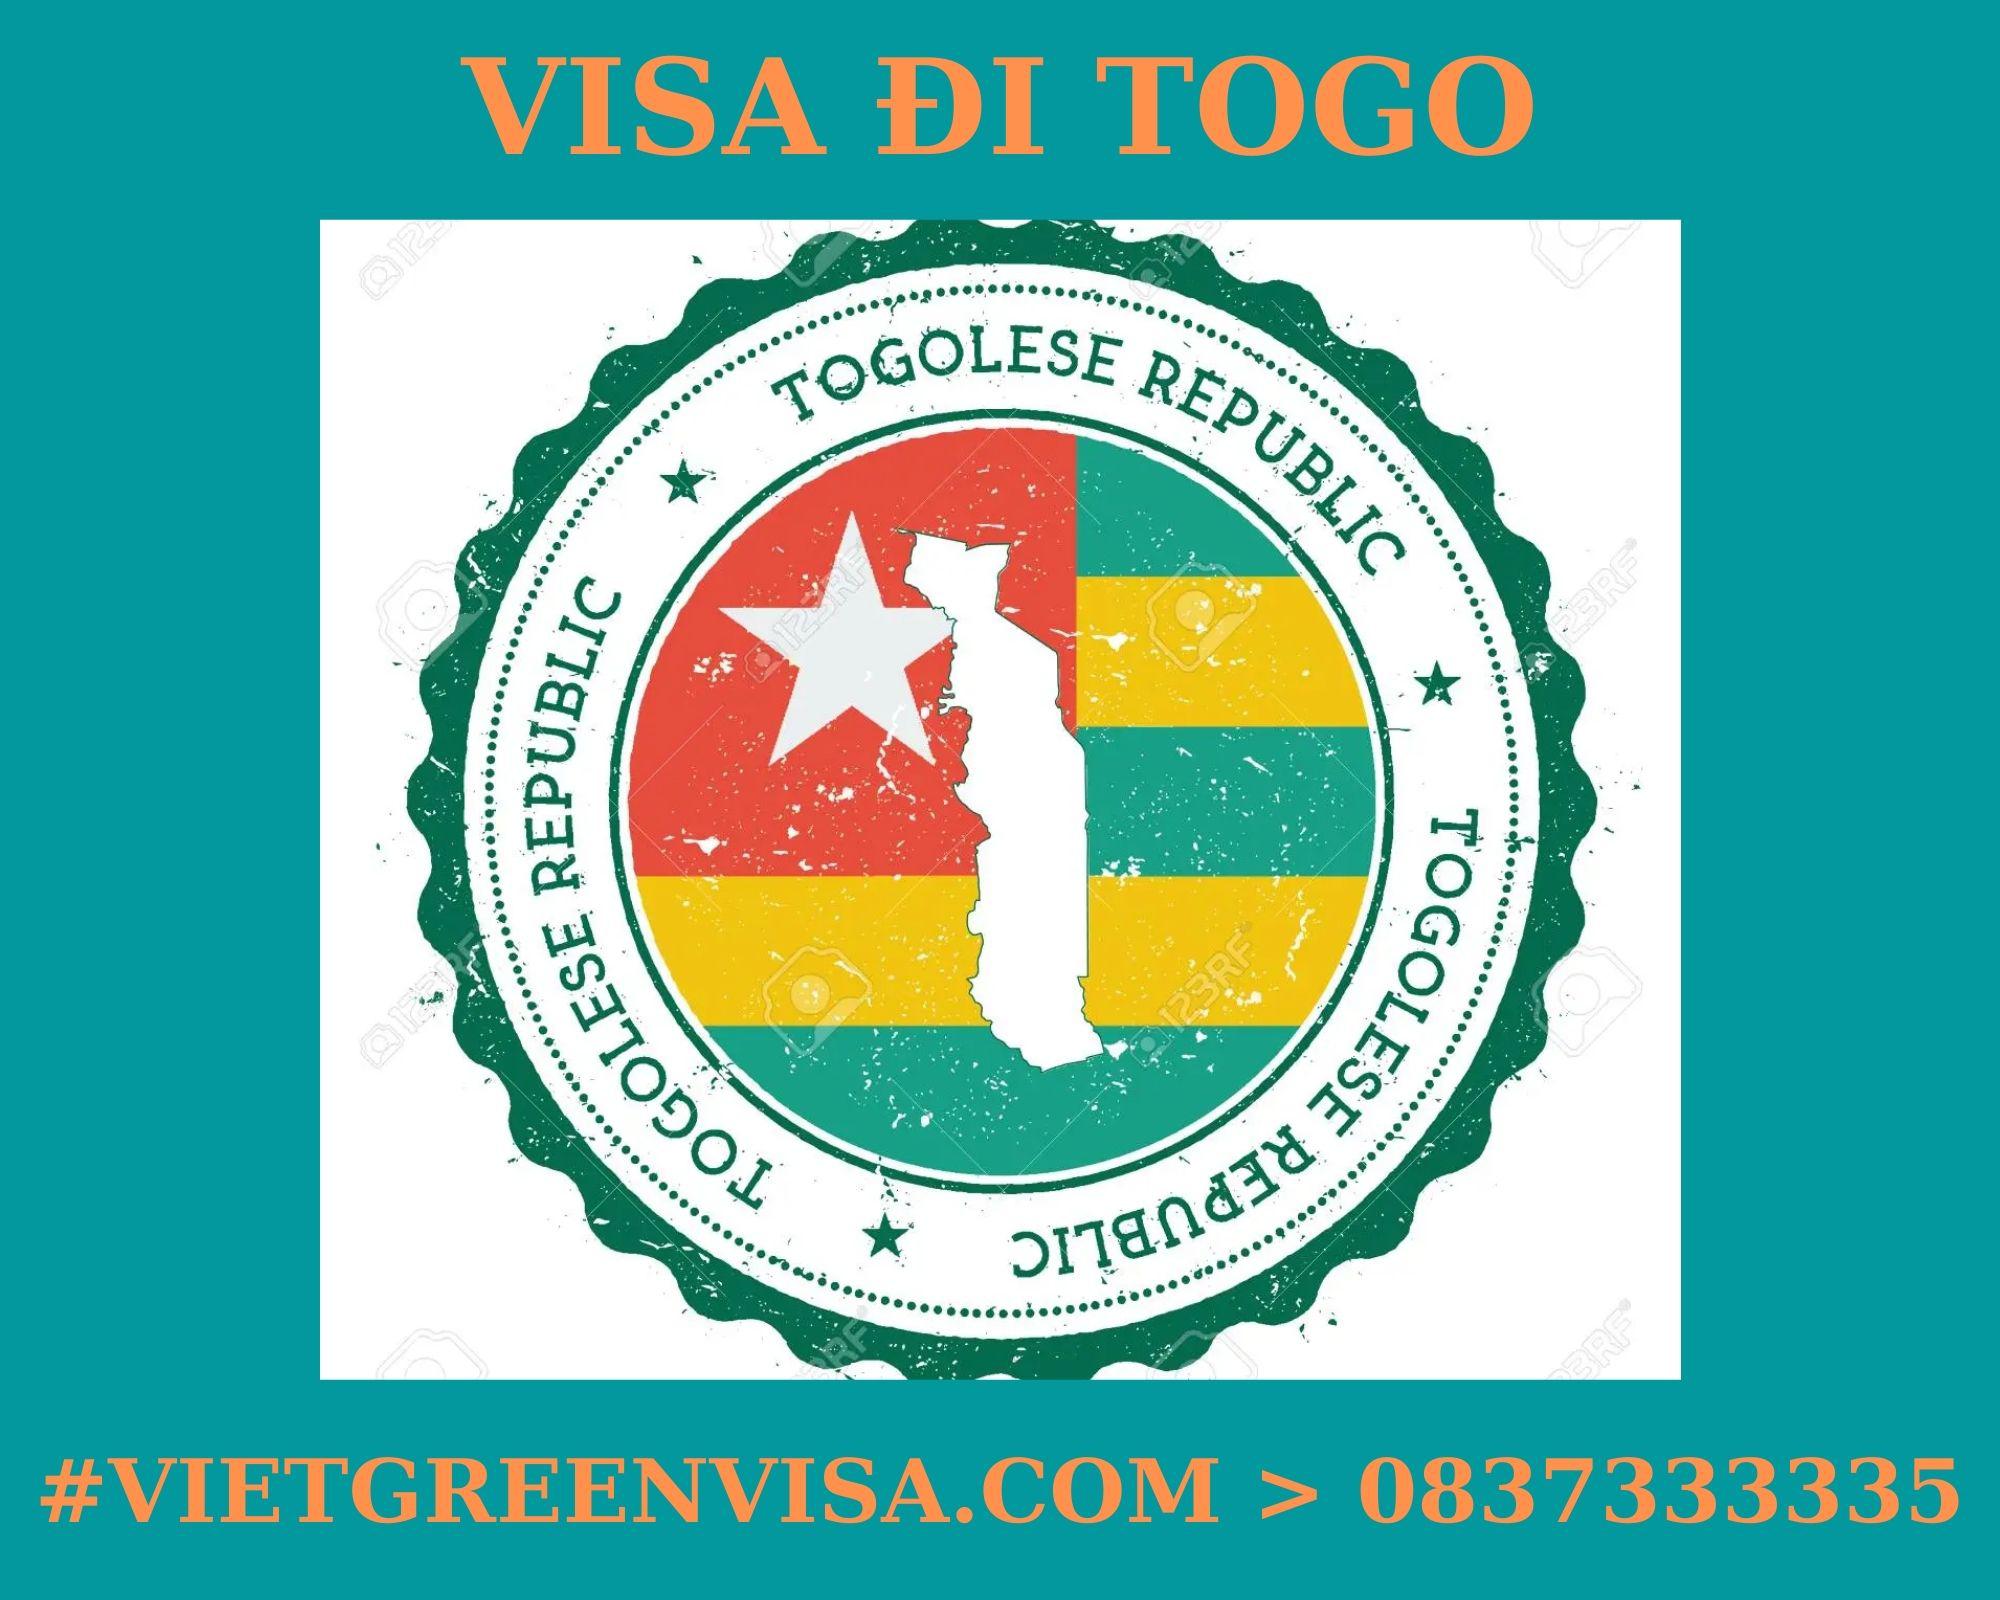 Dịch vụ xin Visa sang Togo tổ chức đám cưới, kết hôn